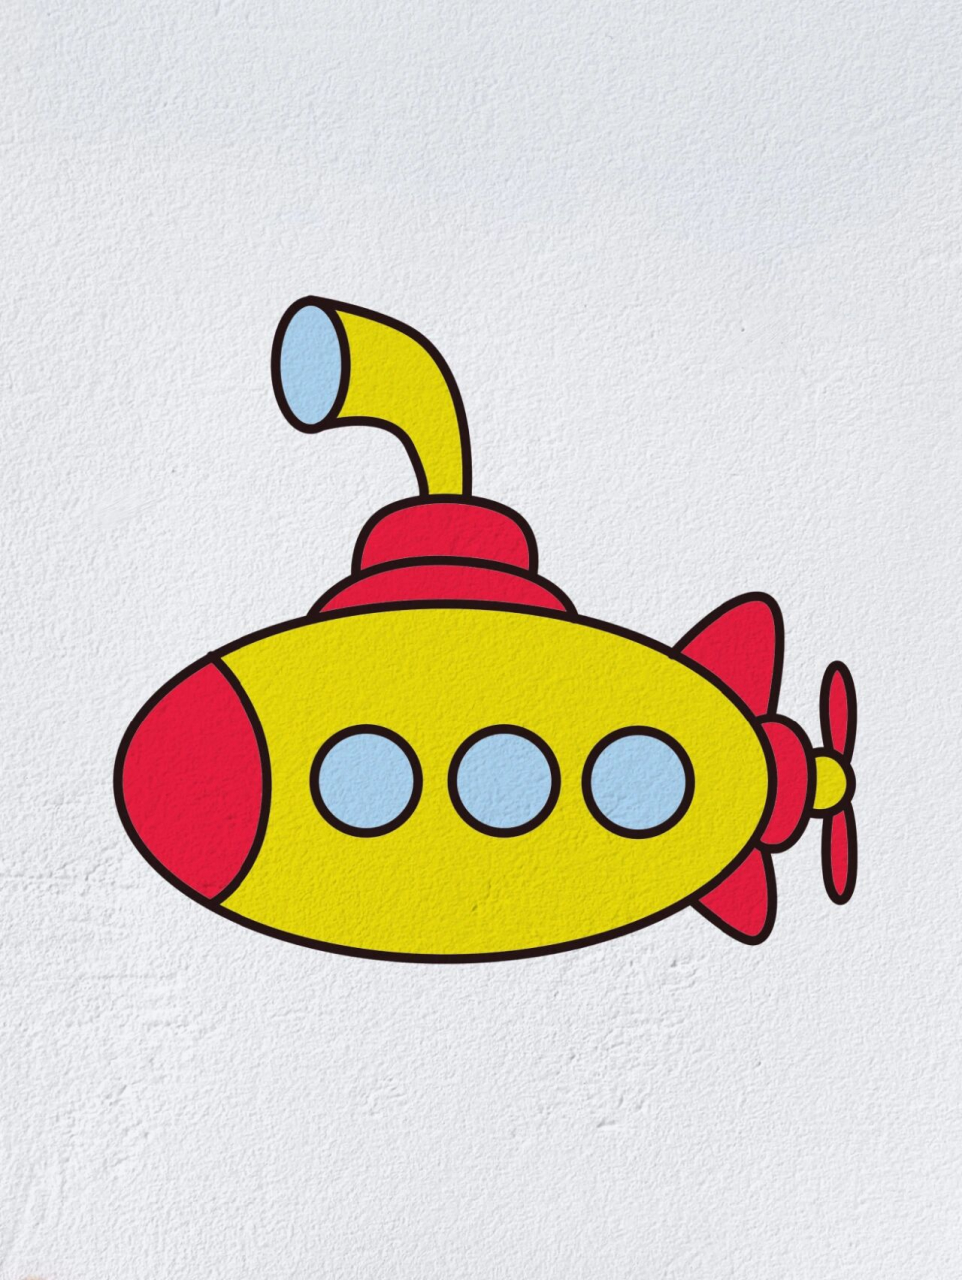 潜水艇怎么画霸气图片